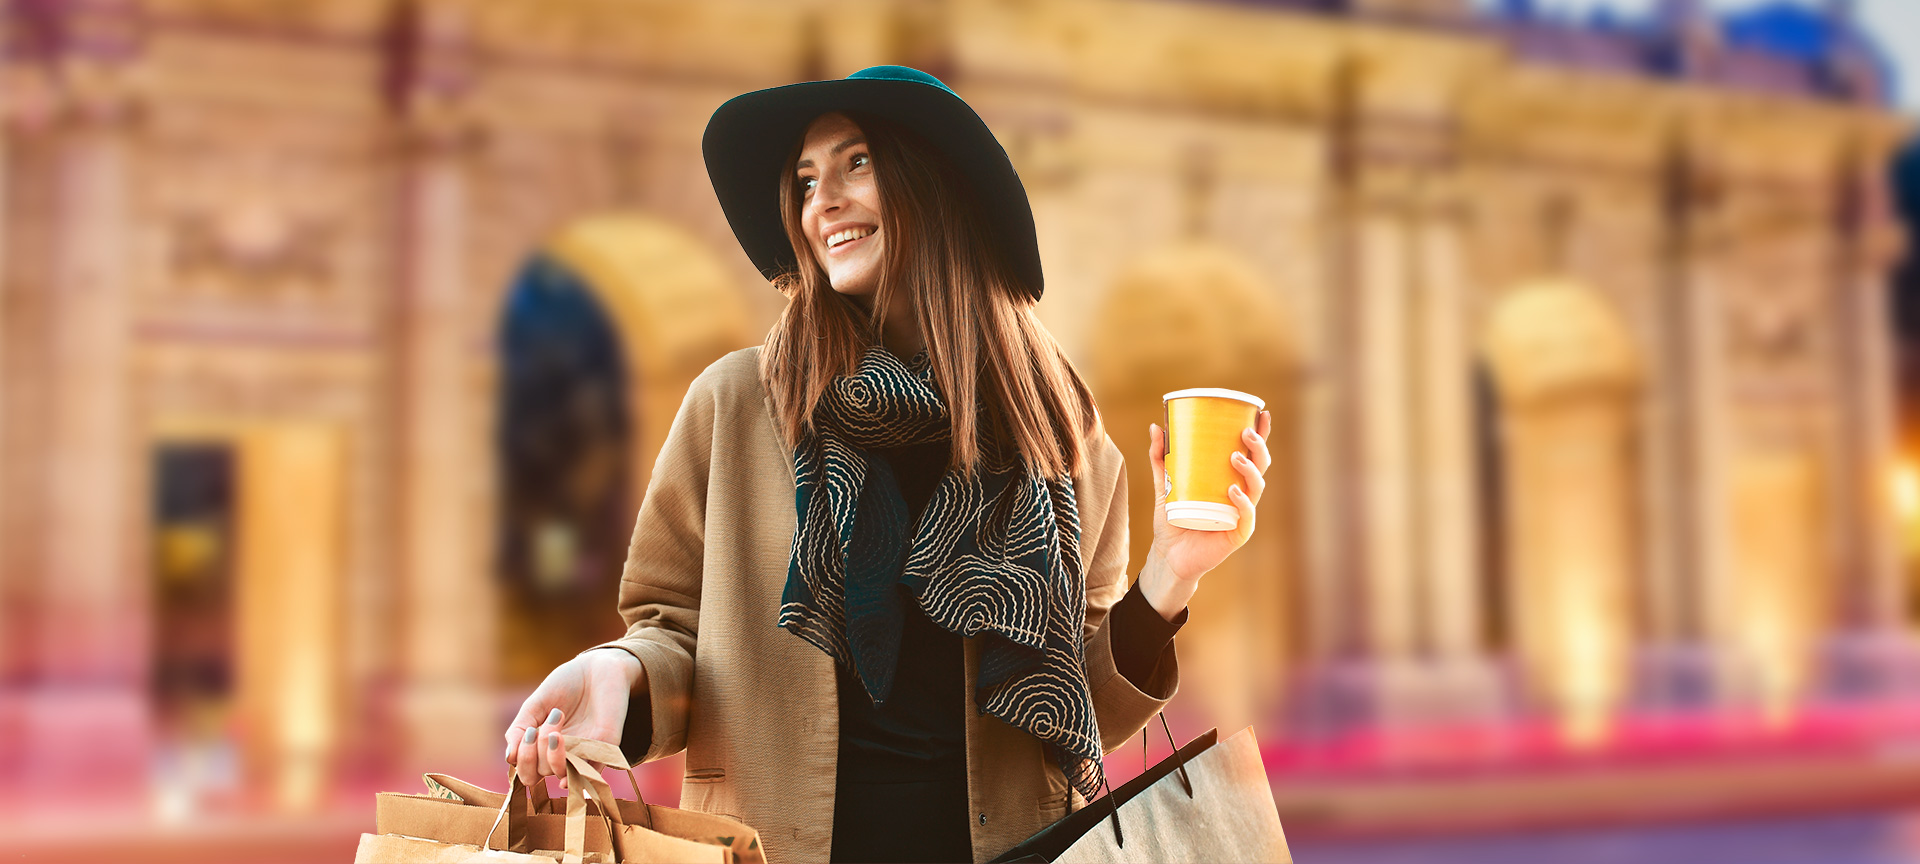 Vrouw geniet van winkelen met koffie in stad.